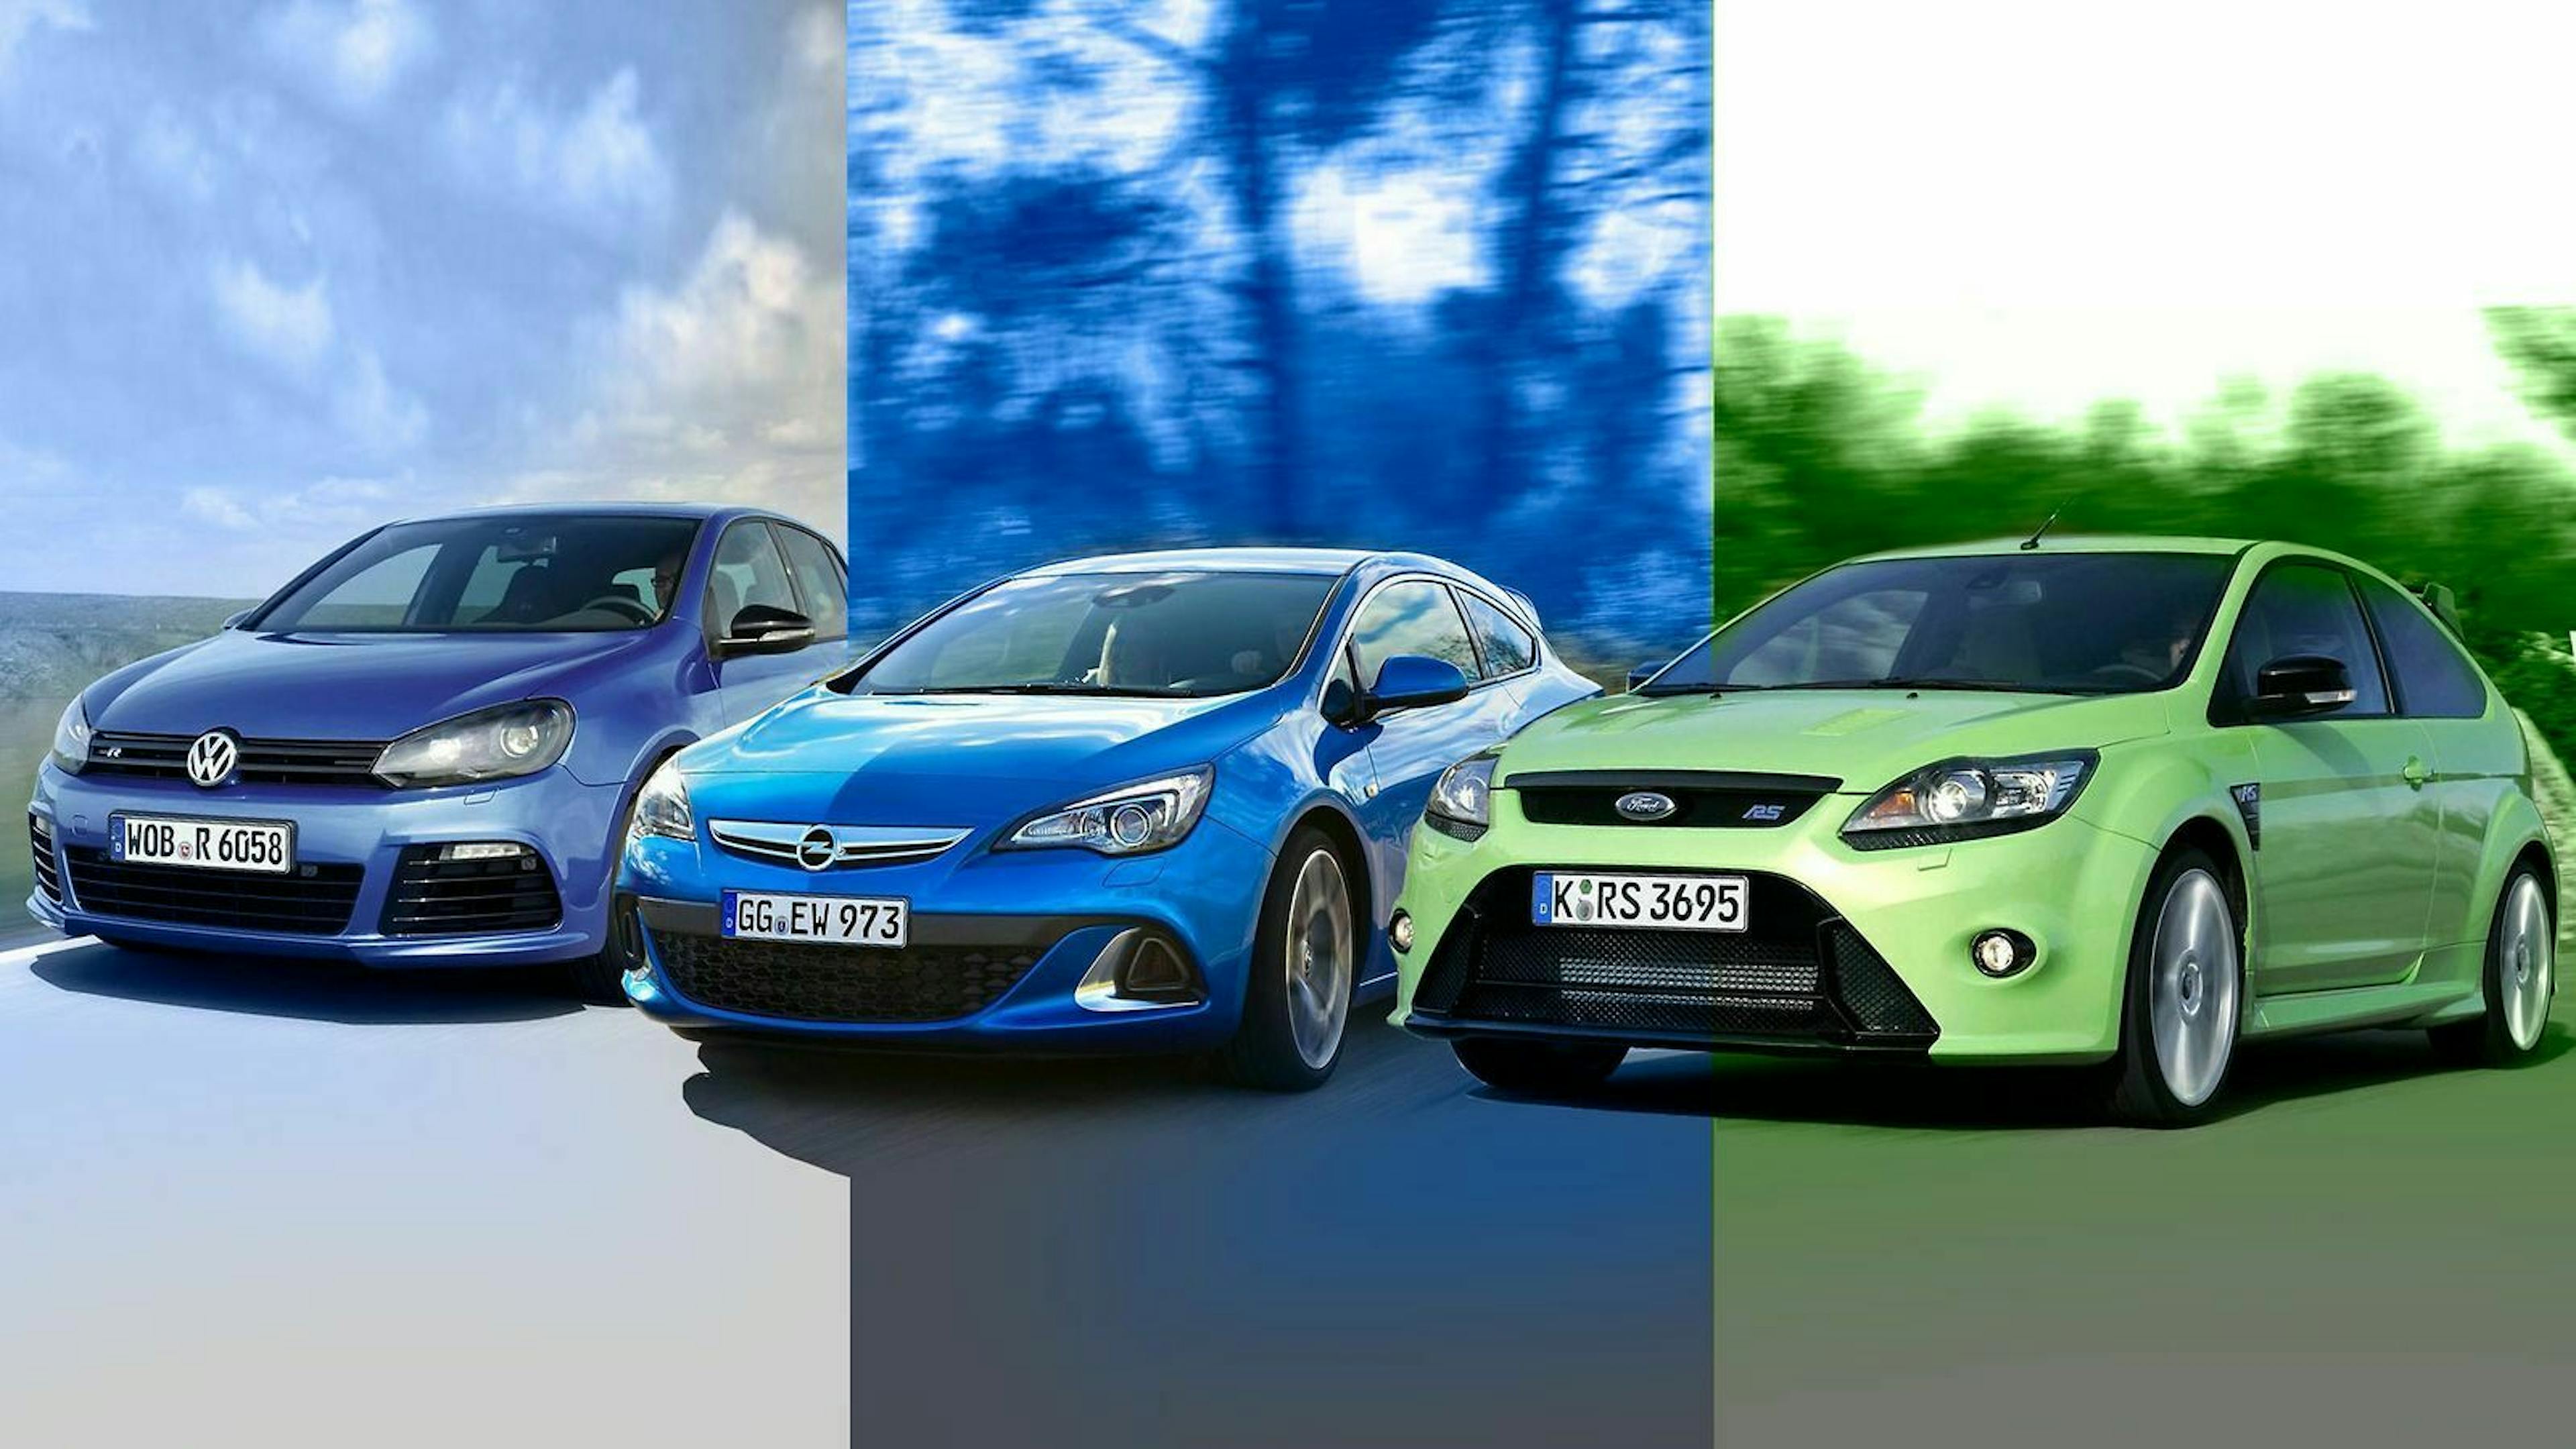 Links im Bild der Golf 6 R, in der Mitte der Opel Astra OPC und rechts der Ford Focus RS. 